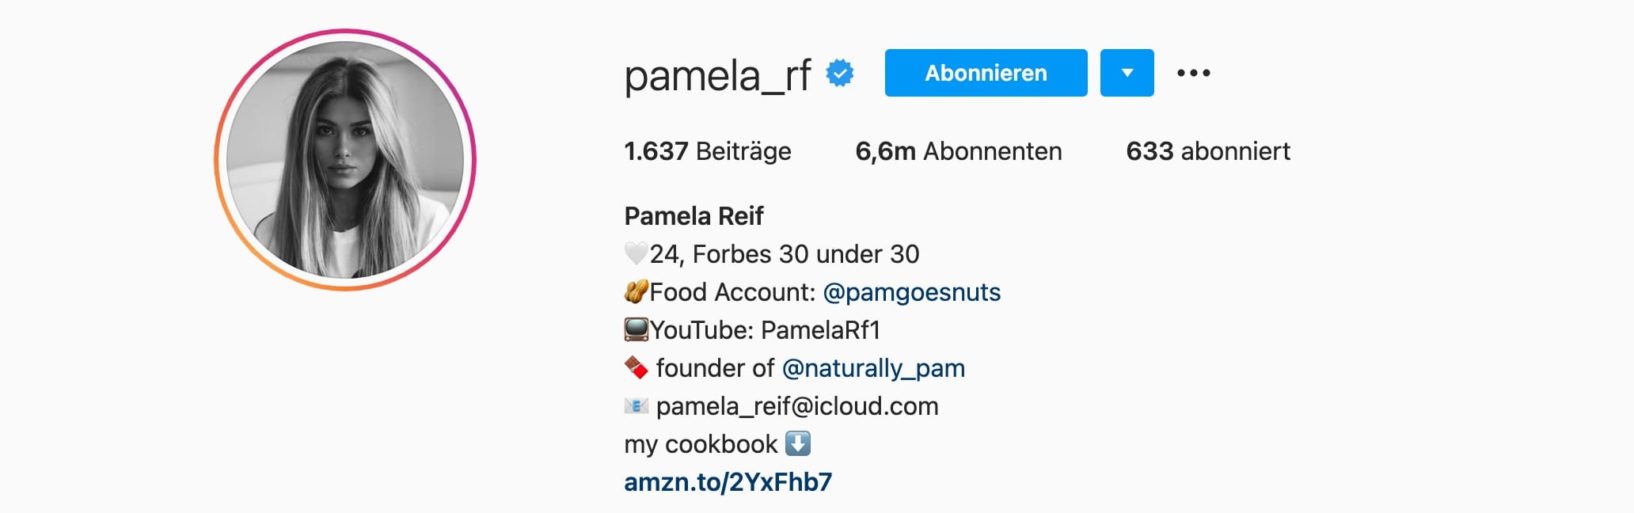 Top-7-Instagram-Influencer-Deutschland-Pamela-Reif-Einstein1